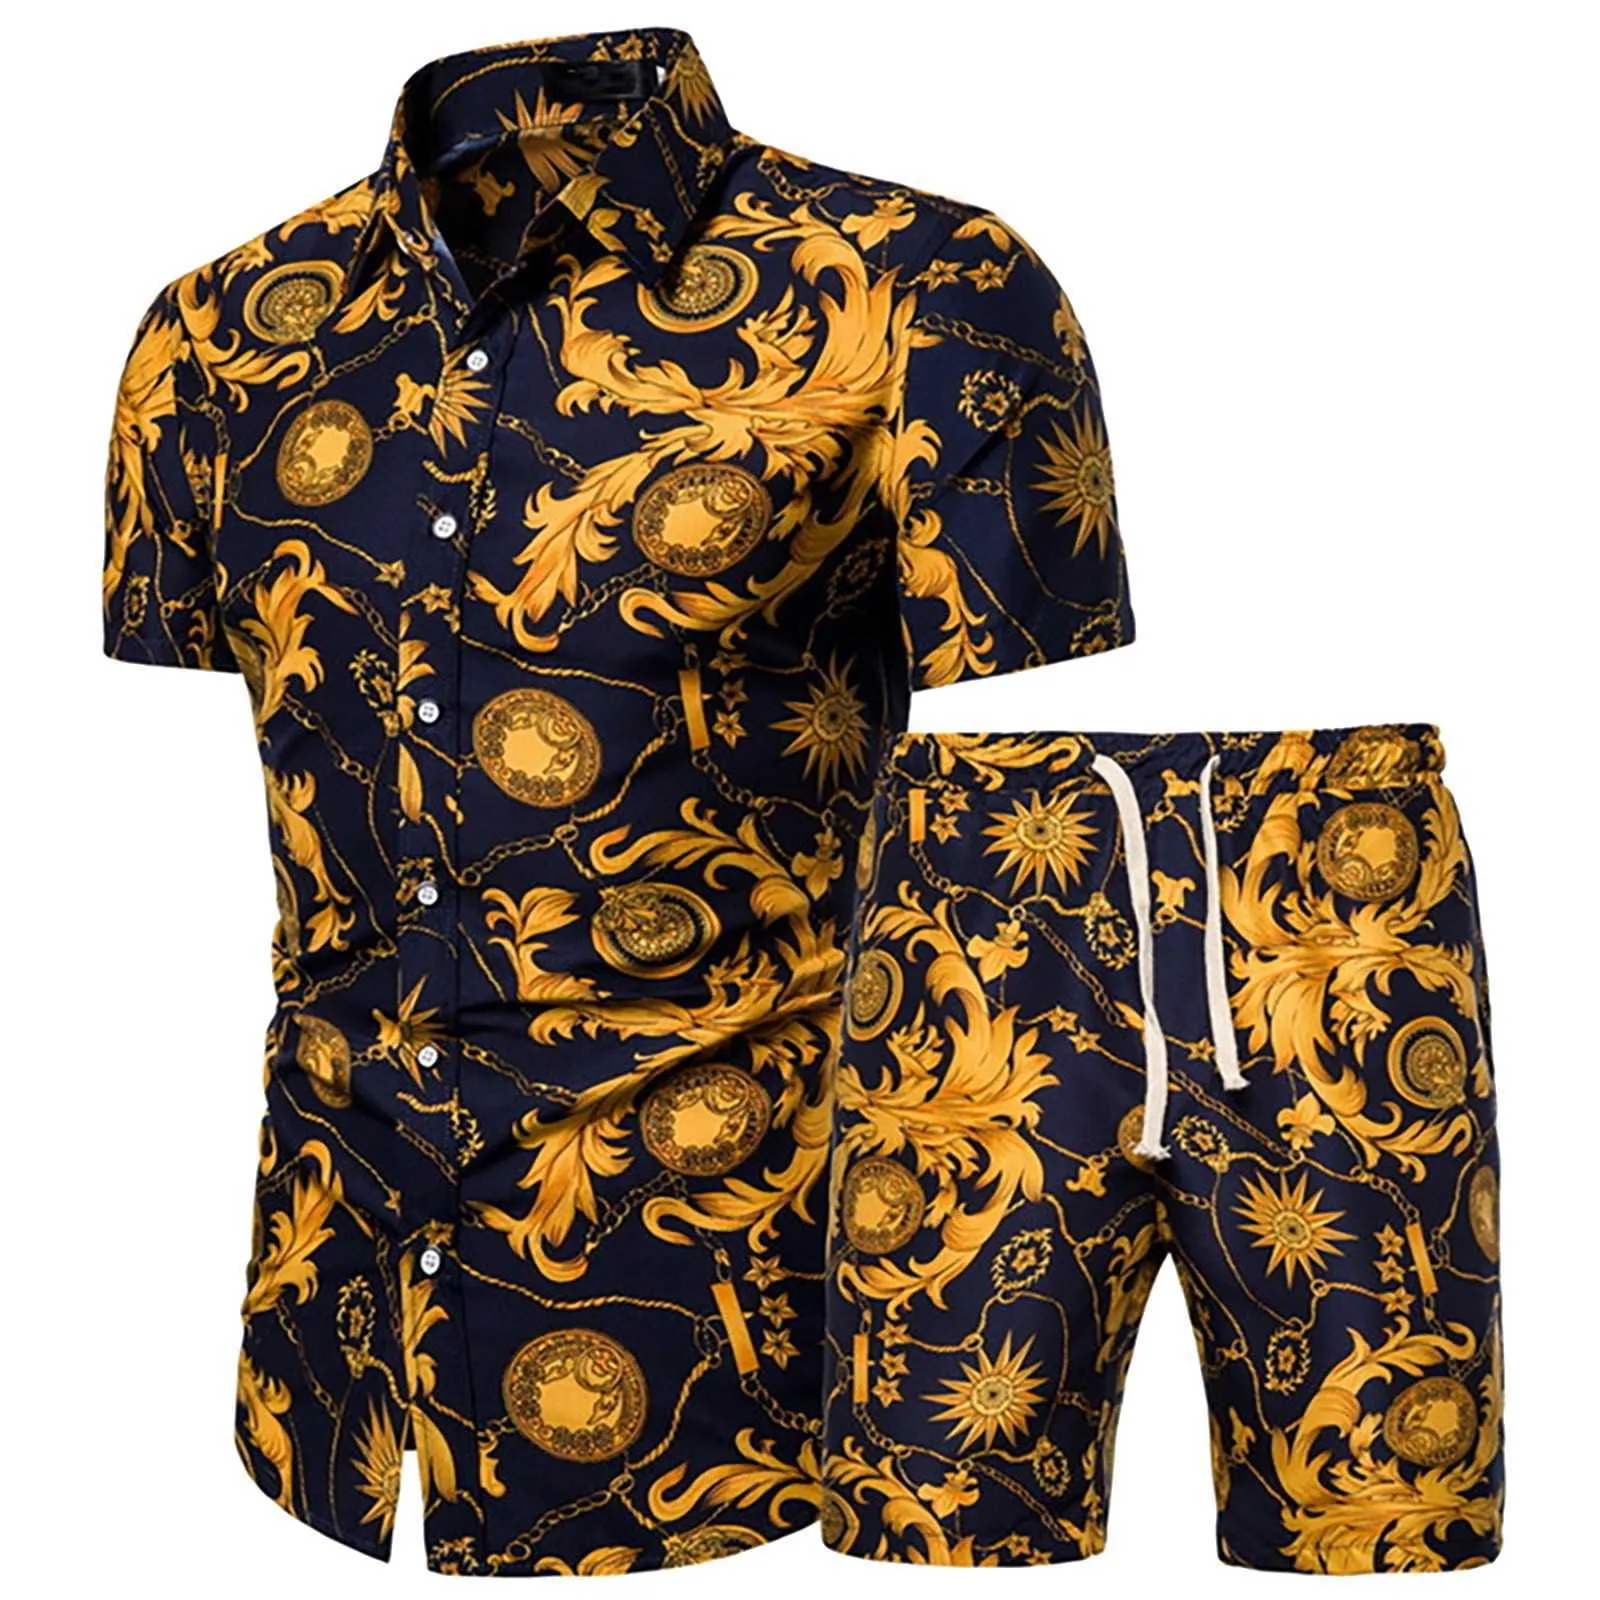 Moda Hawaiian Print Koszulka z krótkim rękawem Set Męskie Plaża Kokosowe Spodenki Print Spodenki męskie Daily Beach Set Set Two-Piece S-3XL 2021 x0610